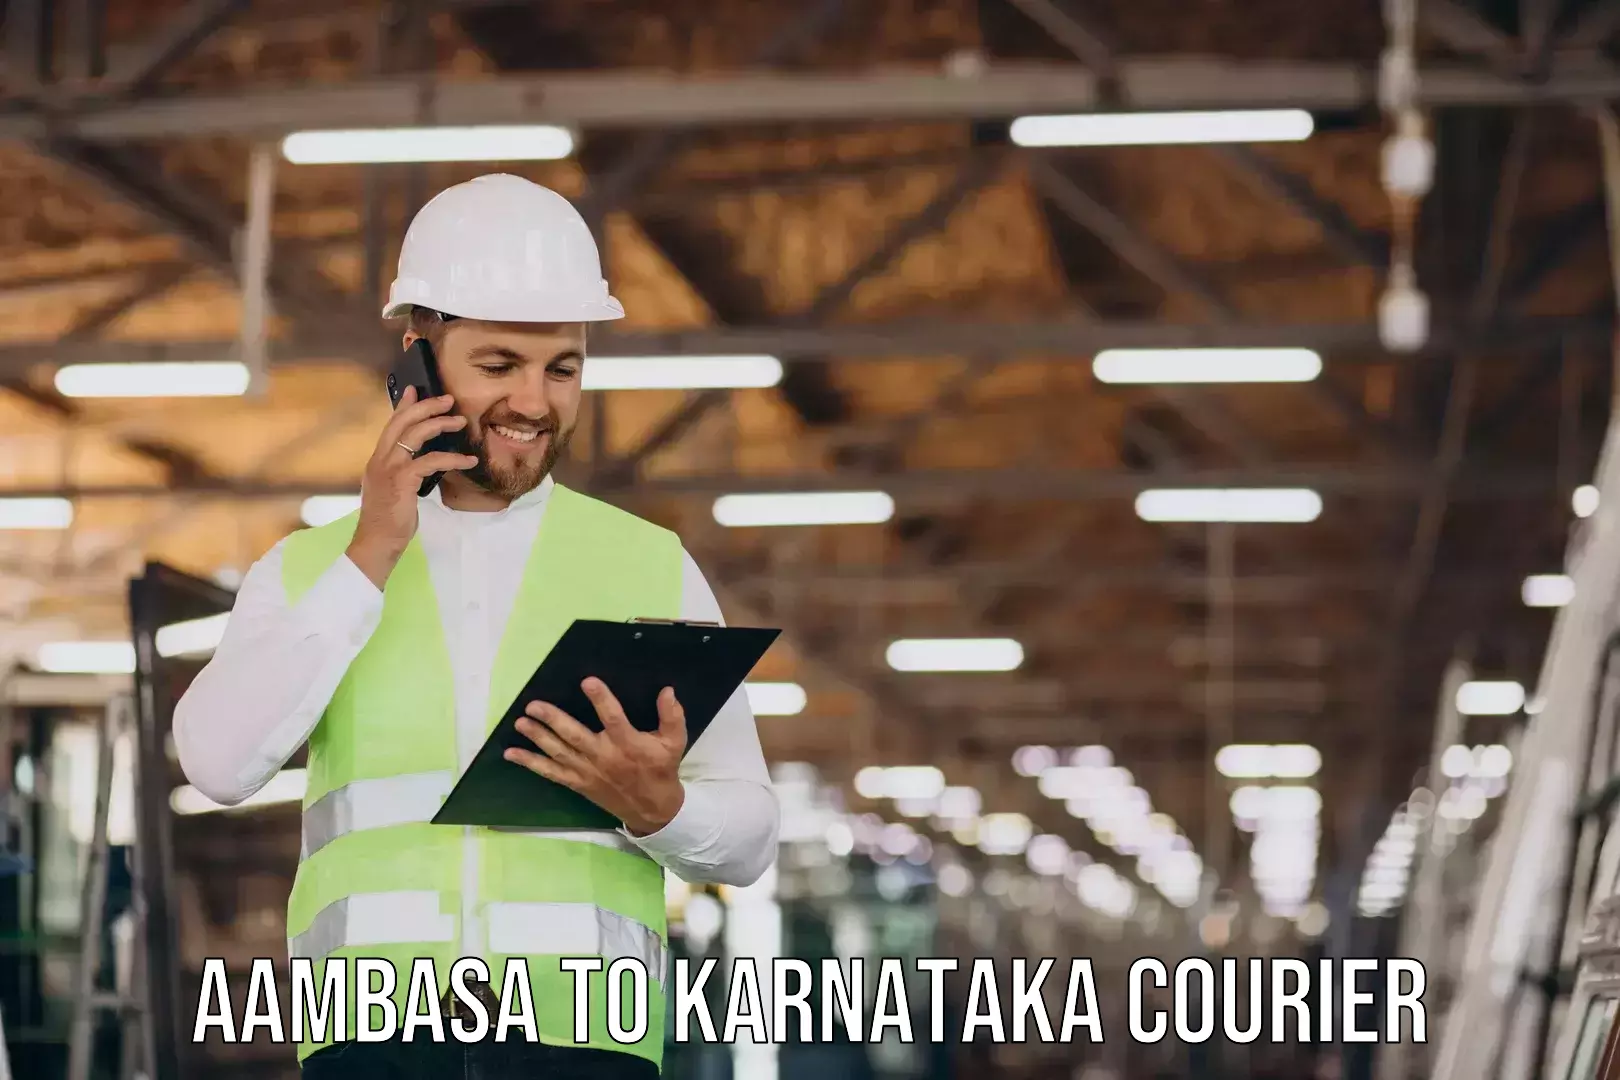 Furniture transport experts Aambasa to Karnataka